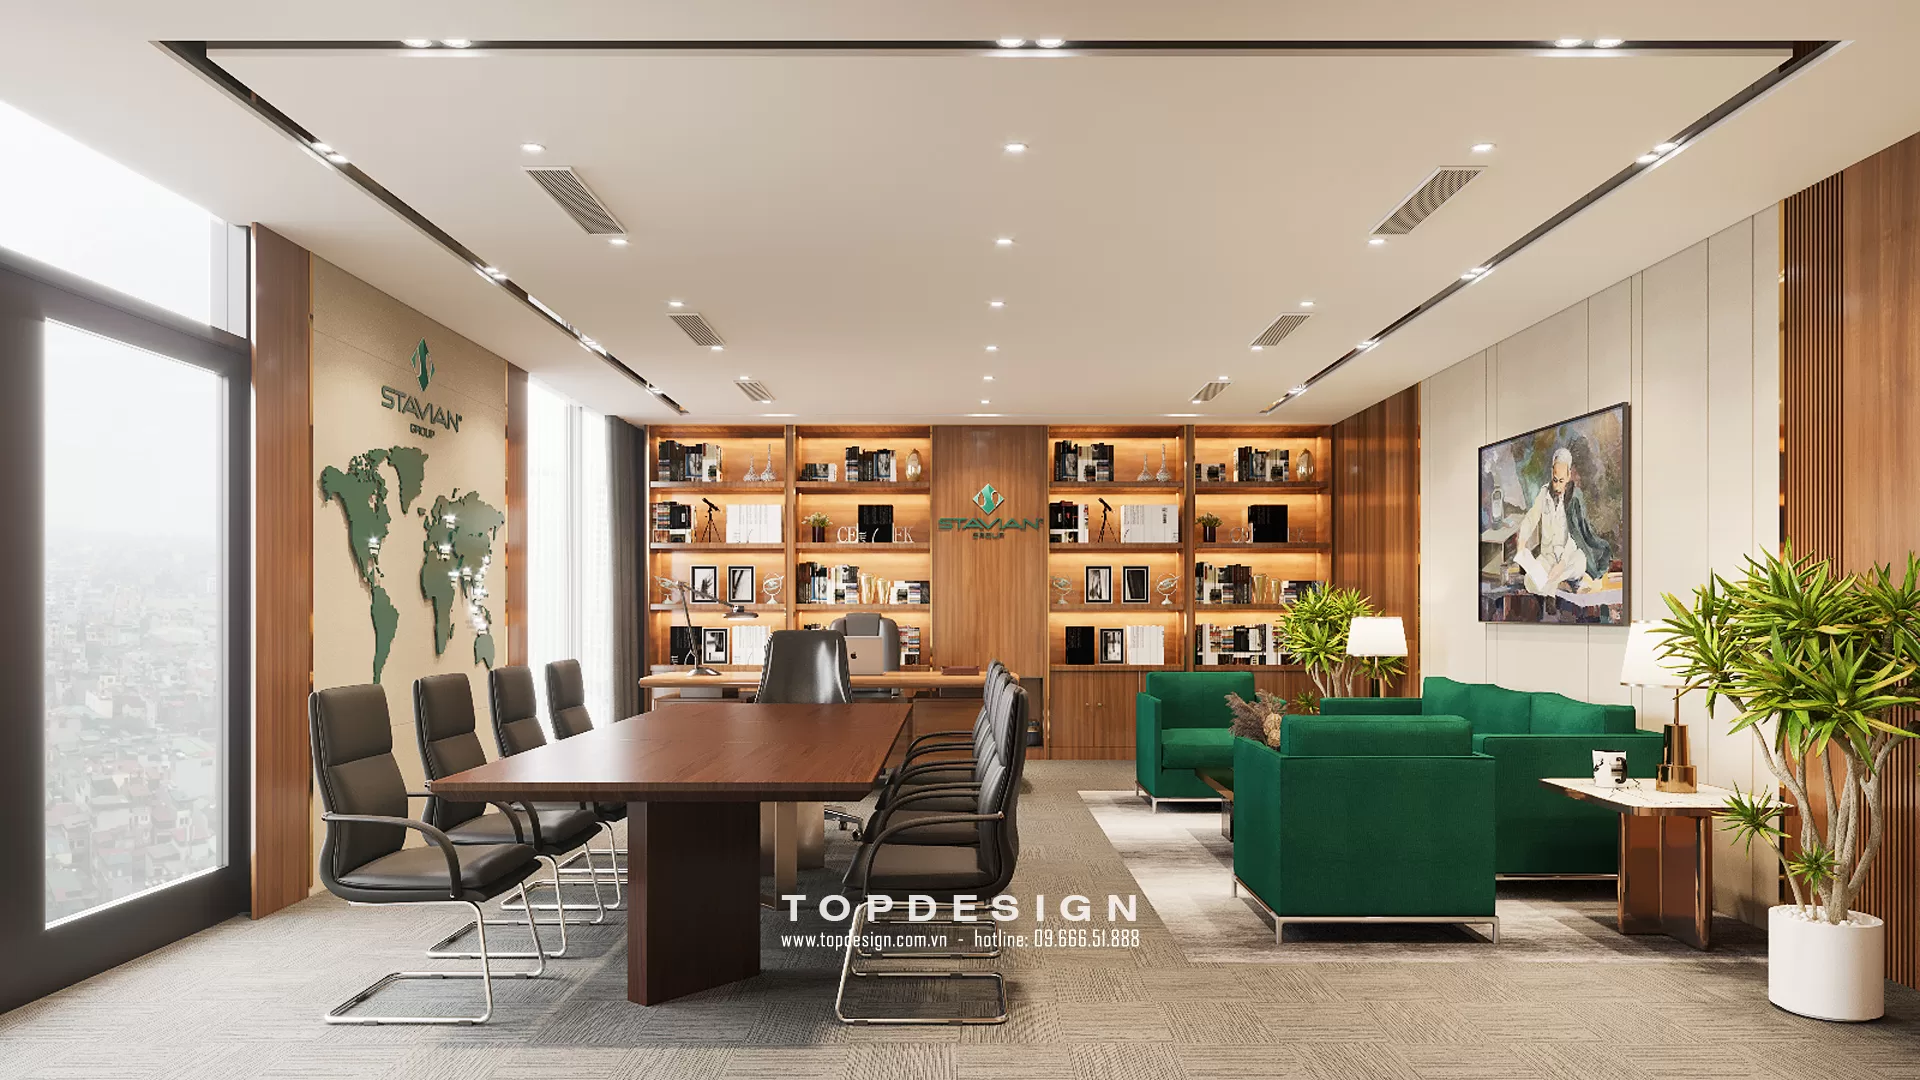 Thiết kế văn phòng phong cách Luxury - TOPDESIGN - 10